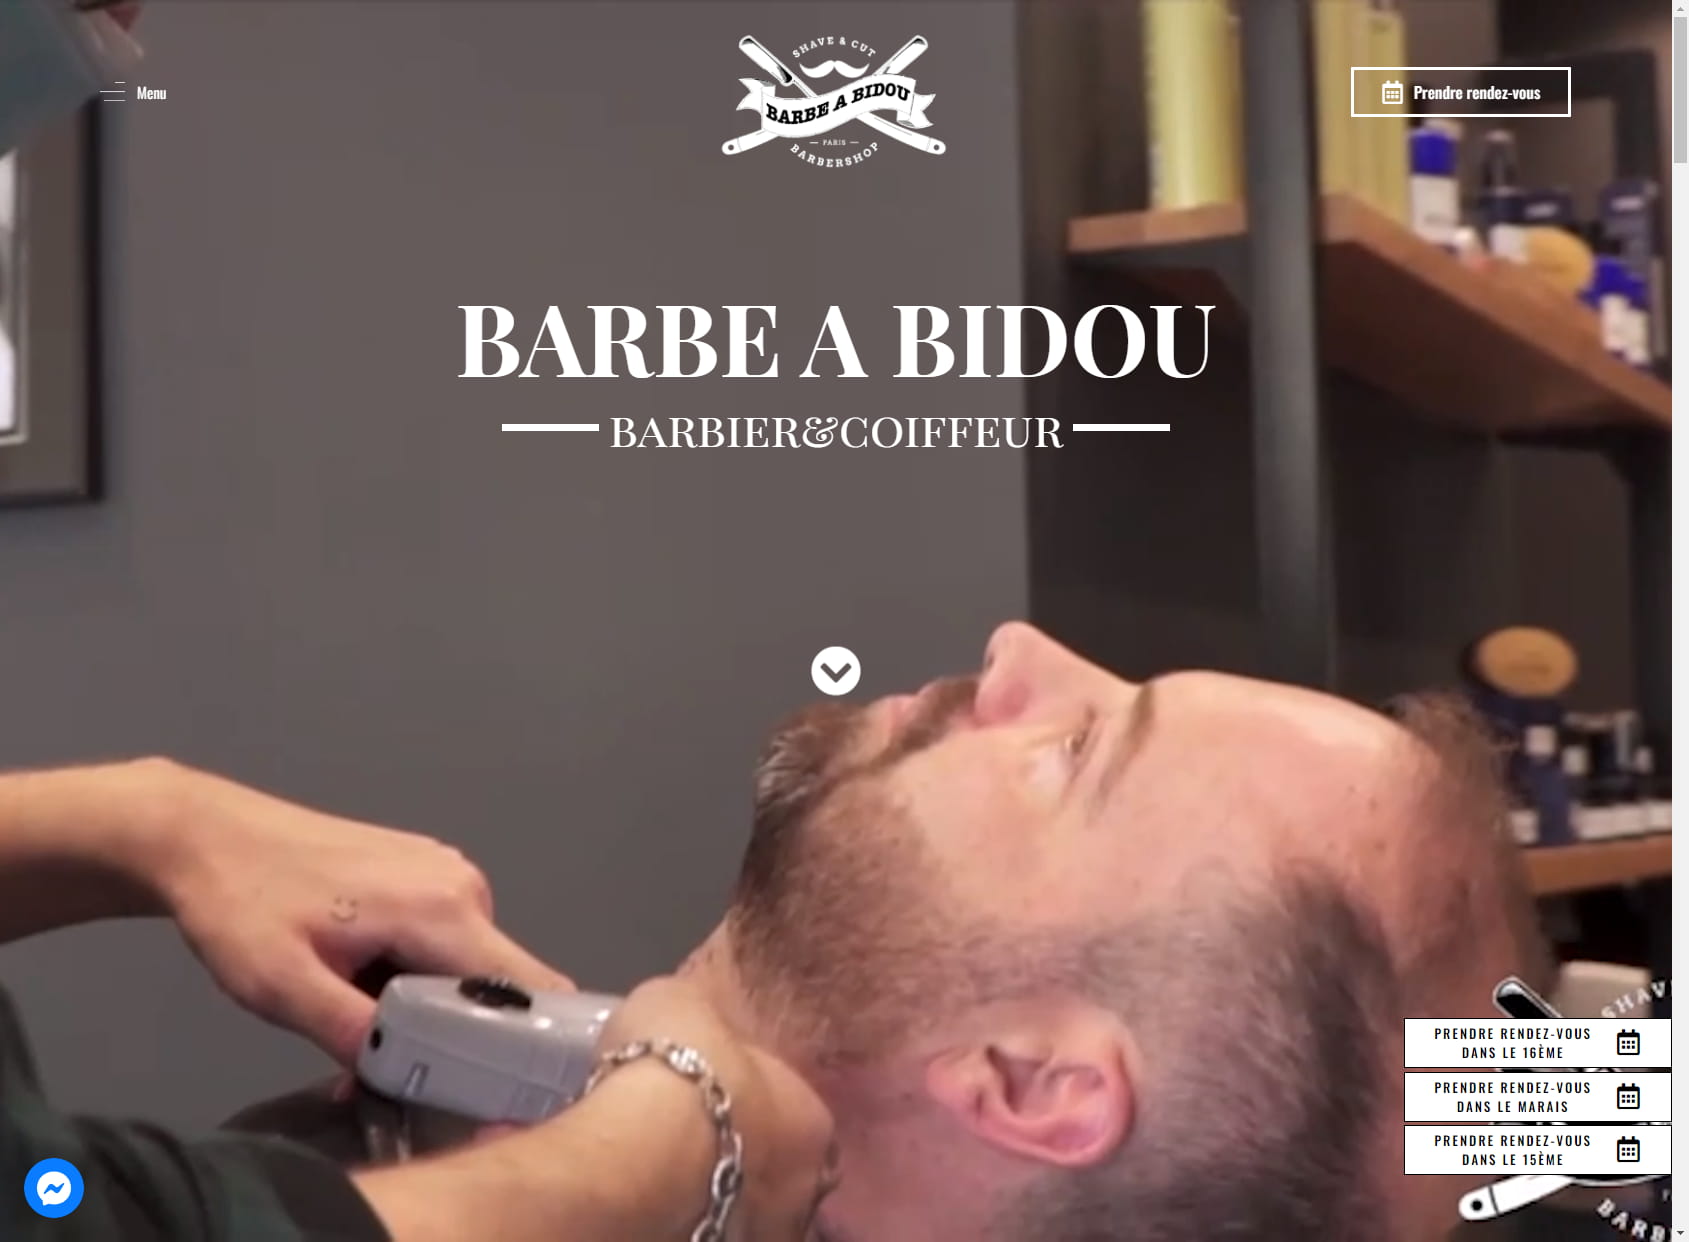 Barbe A Bidou barbershop